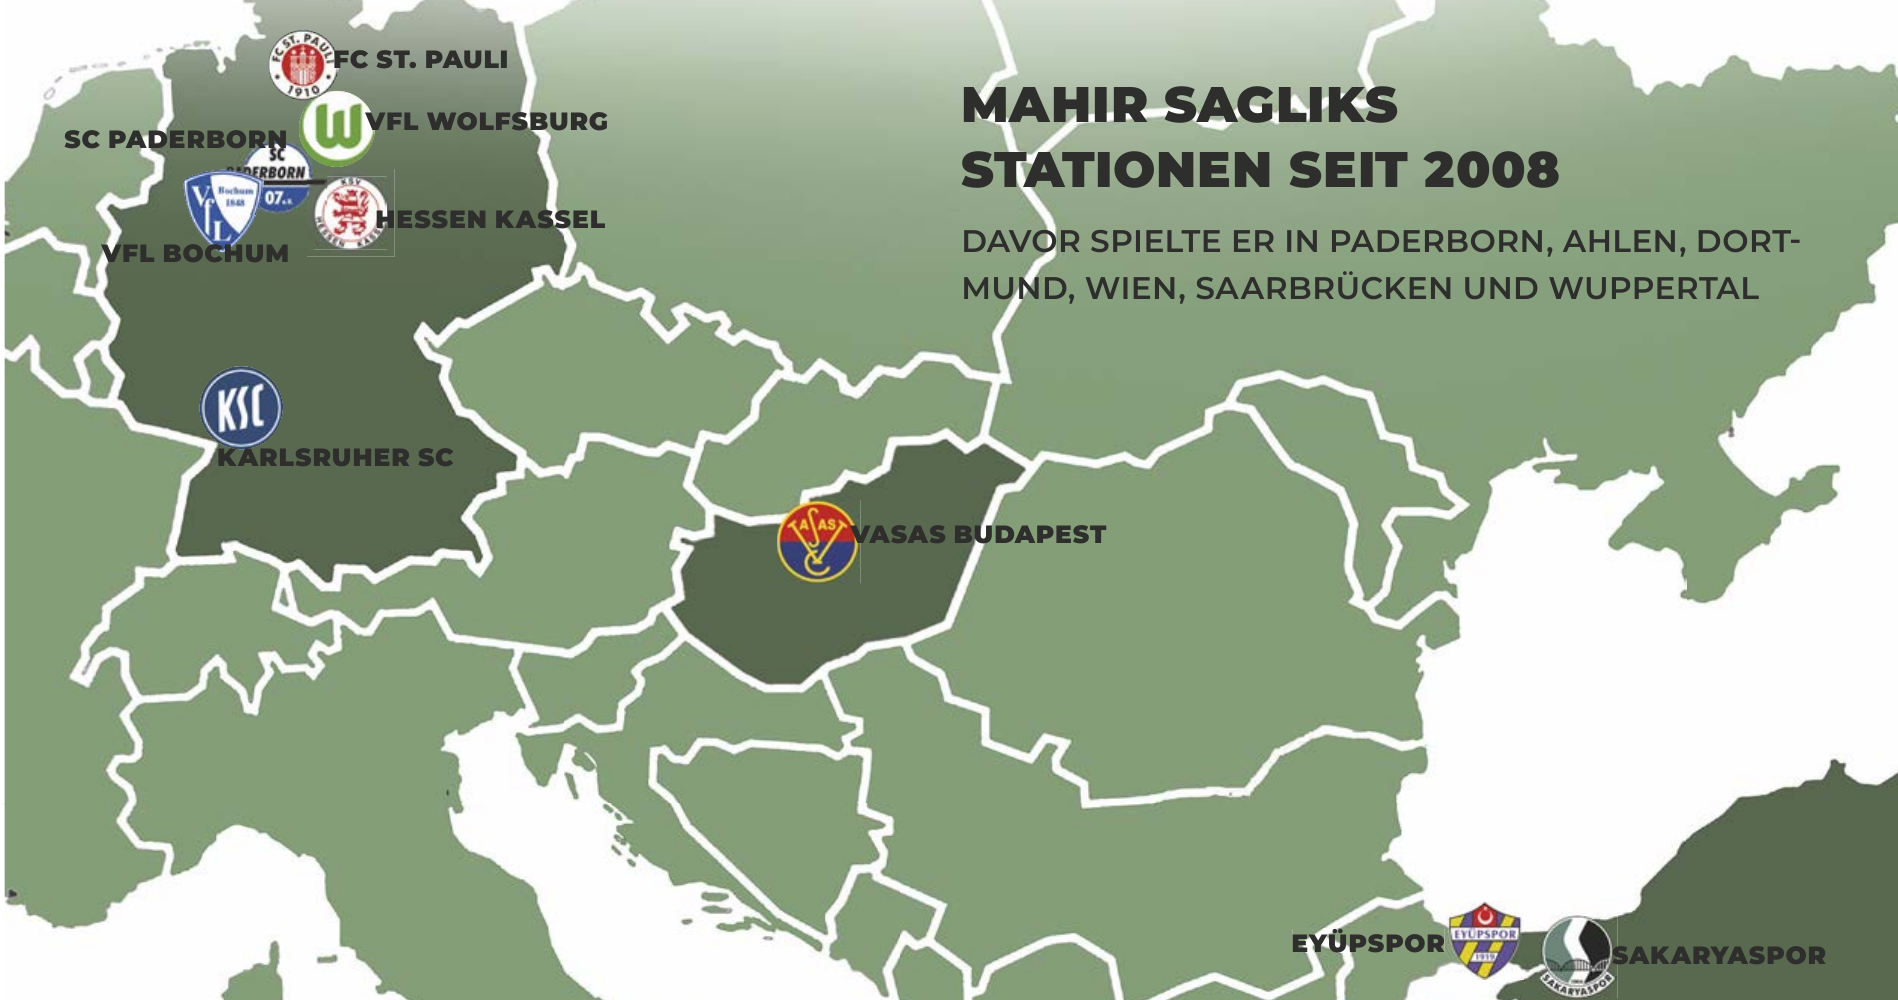 Mahir Sagliks Stationen seit 2008. Davor spielte er in Paderborn, Ahlen, Dortmund, Wien, Saarbrücken und Wuppertal.